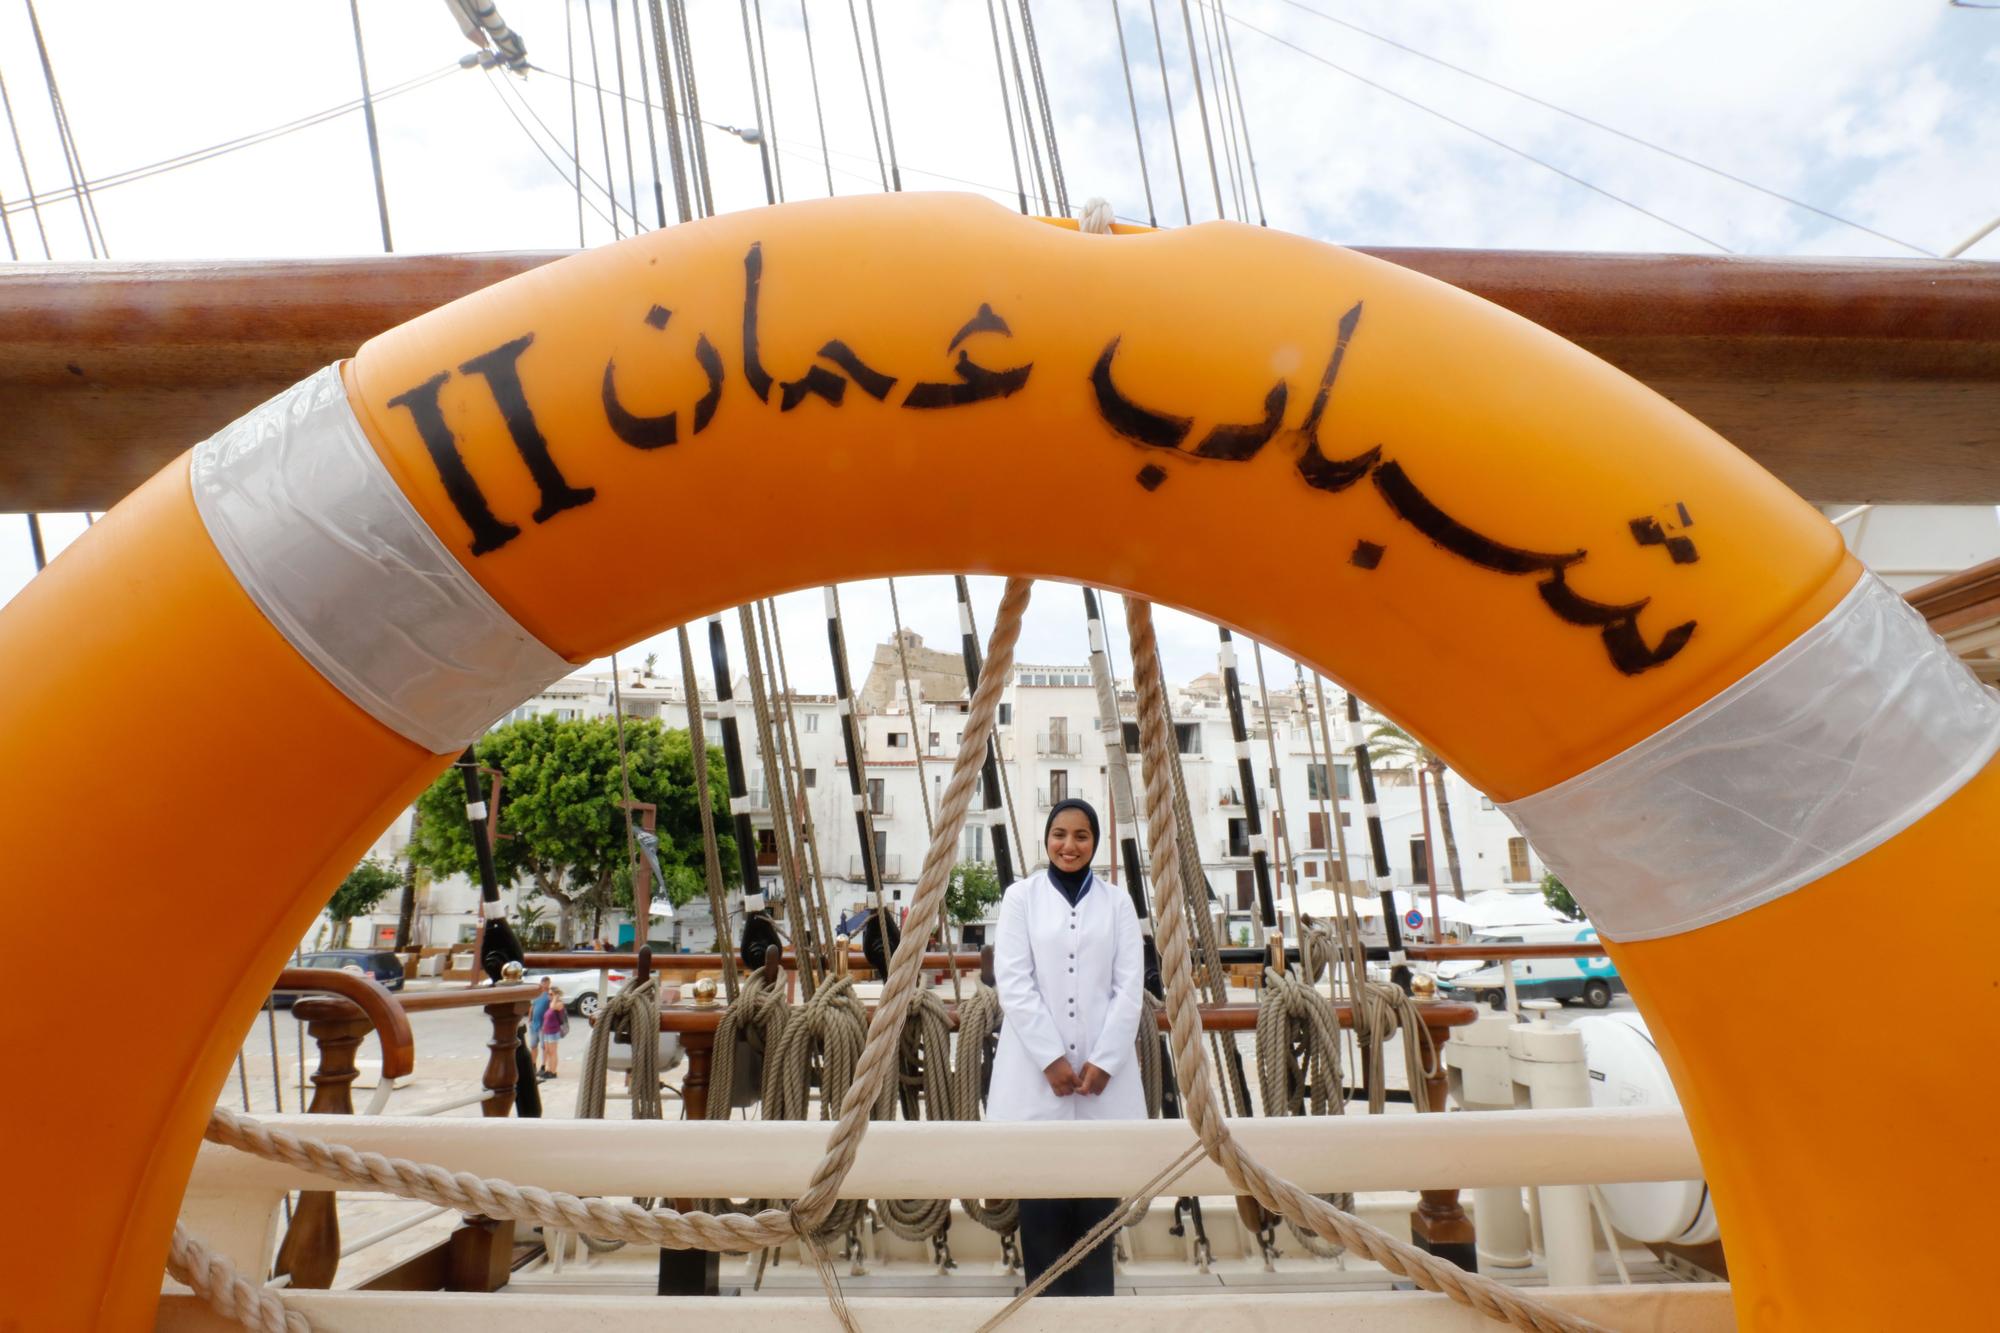 Jornada de puertas abiertas en el velero de Omán barco escuela 'Royal Shabab Omán 2'